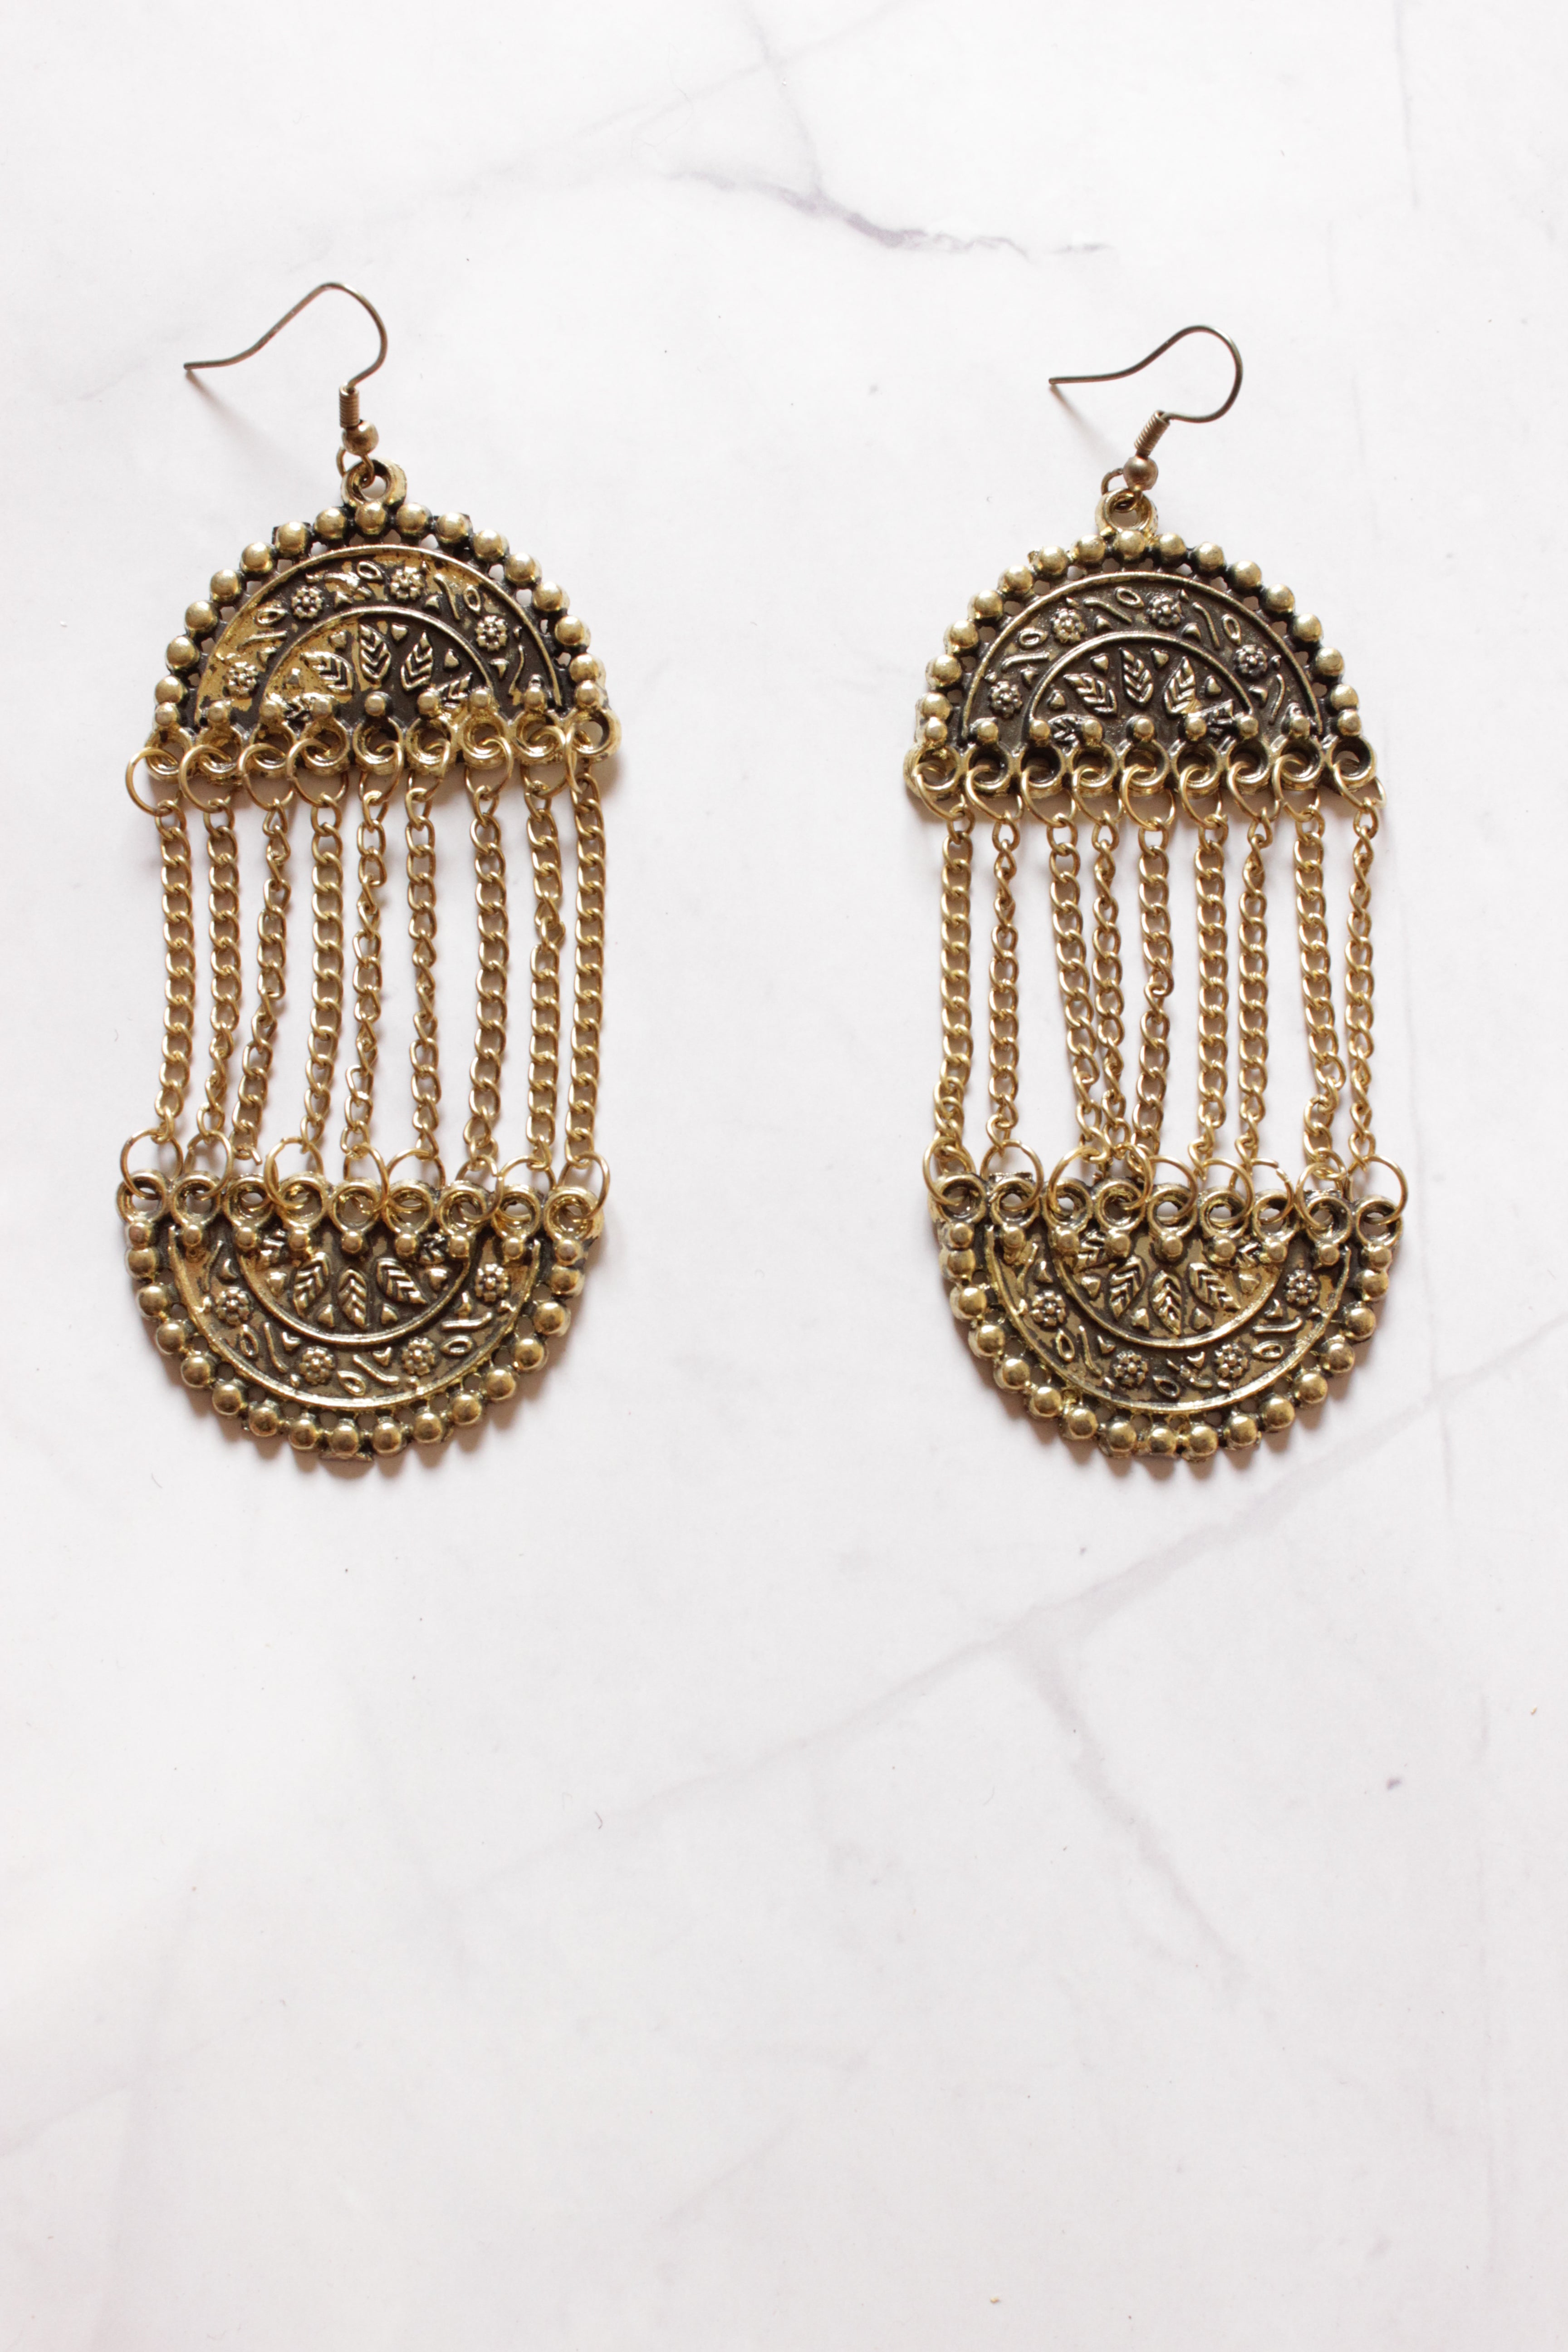 Antique Gold Finish Metal Chain Strands Dangler Earrings